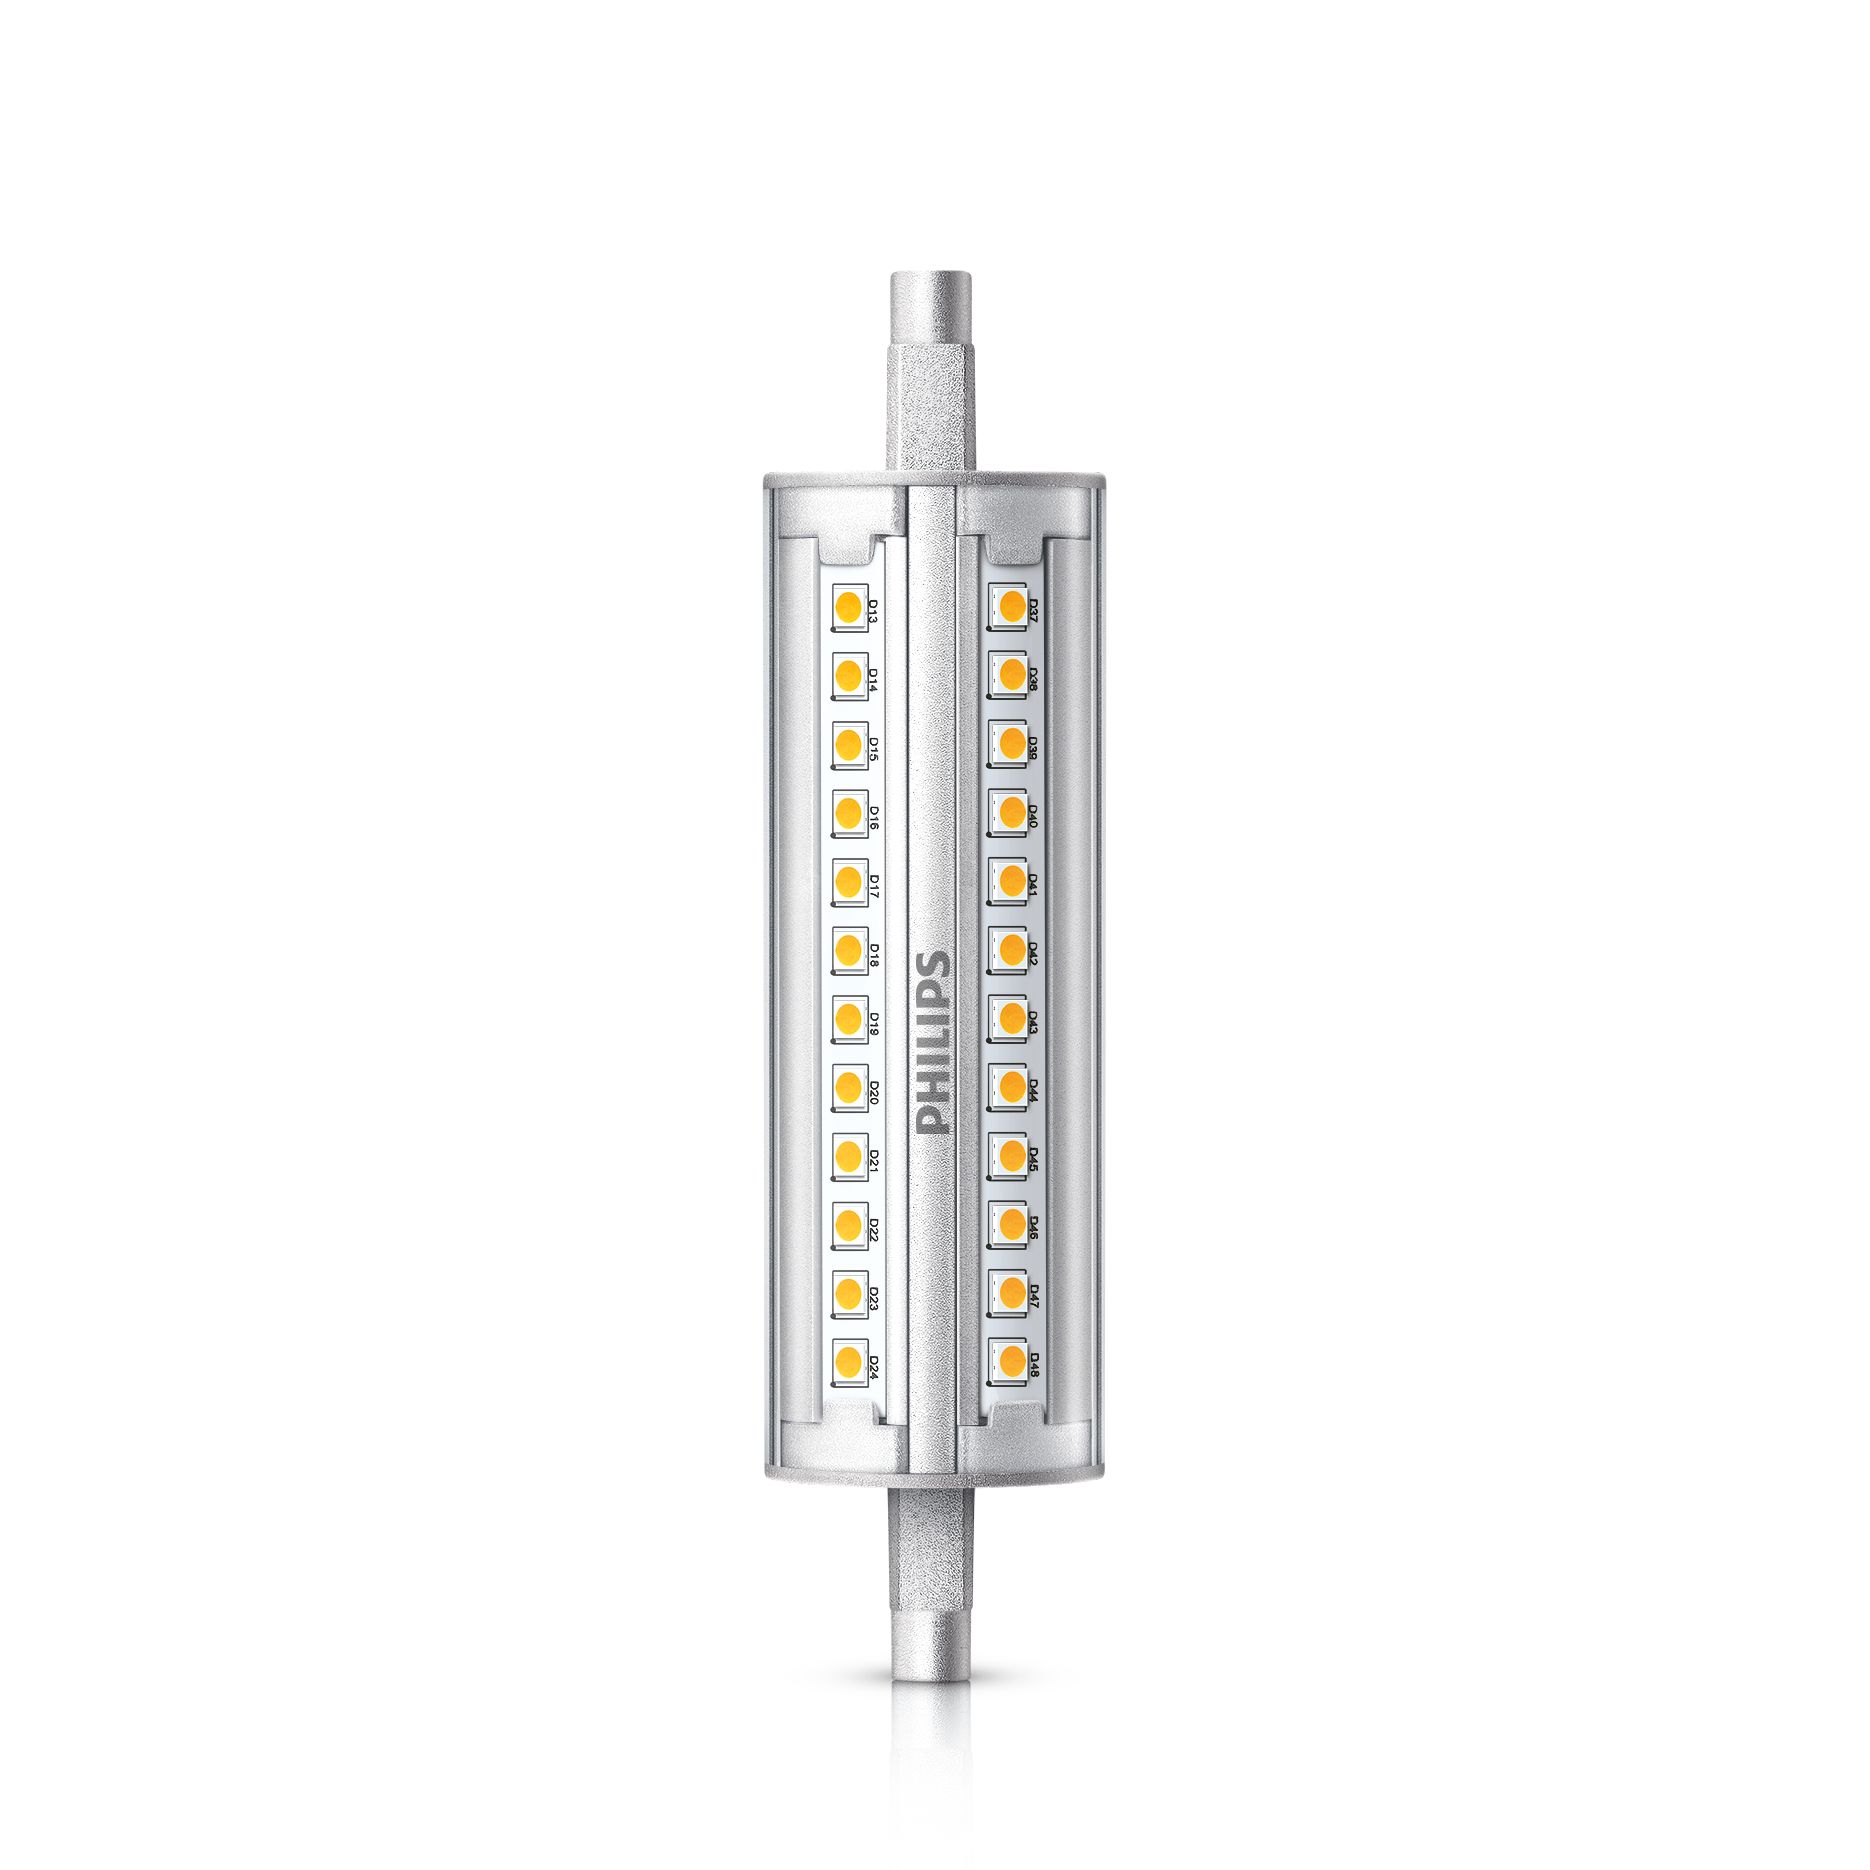 CorePro LEDlinear MV | 5011000 | lighting